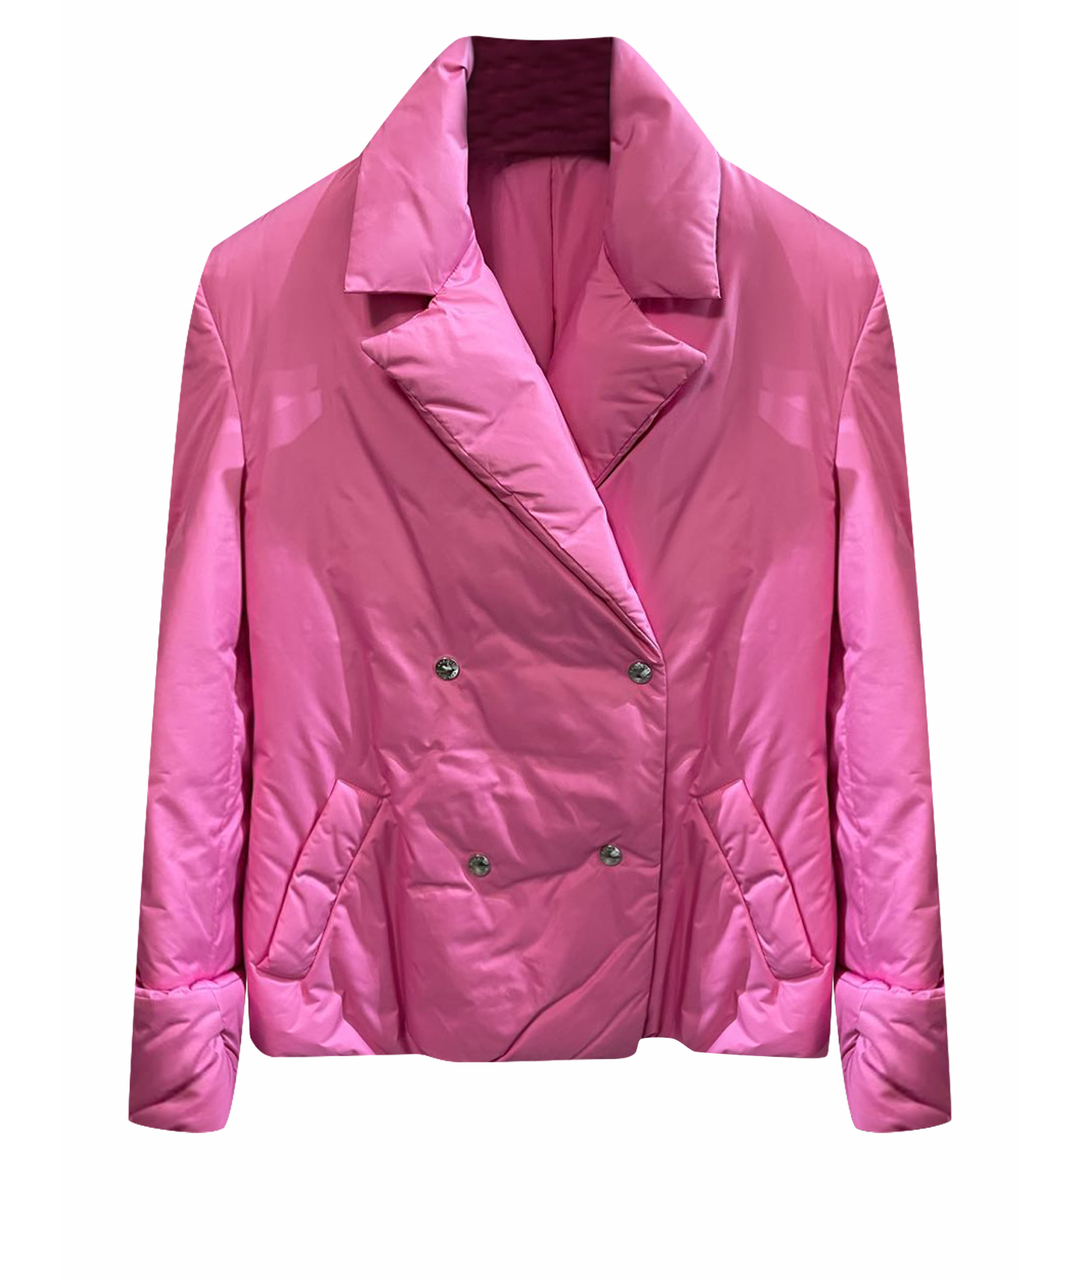 KHRISJOY Розовая полиэстеровая куртка, фото 1